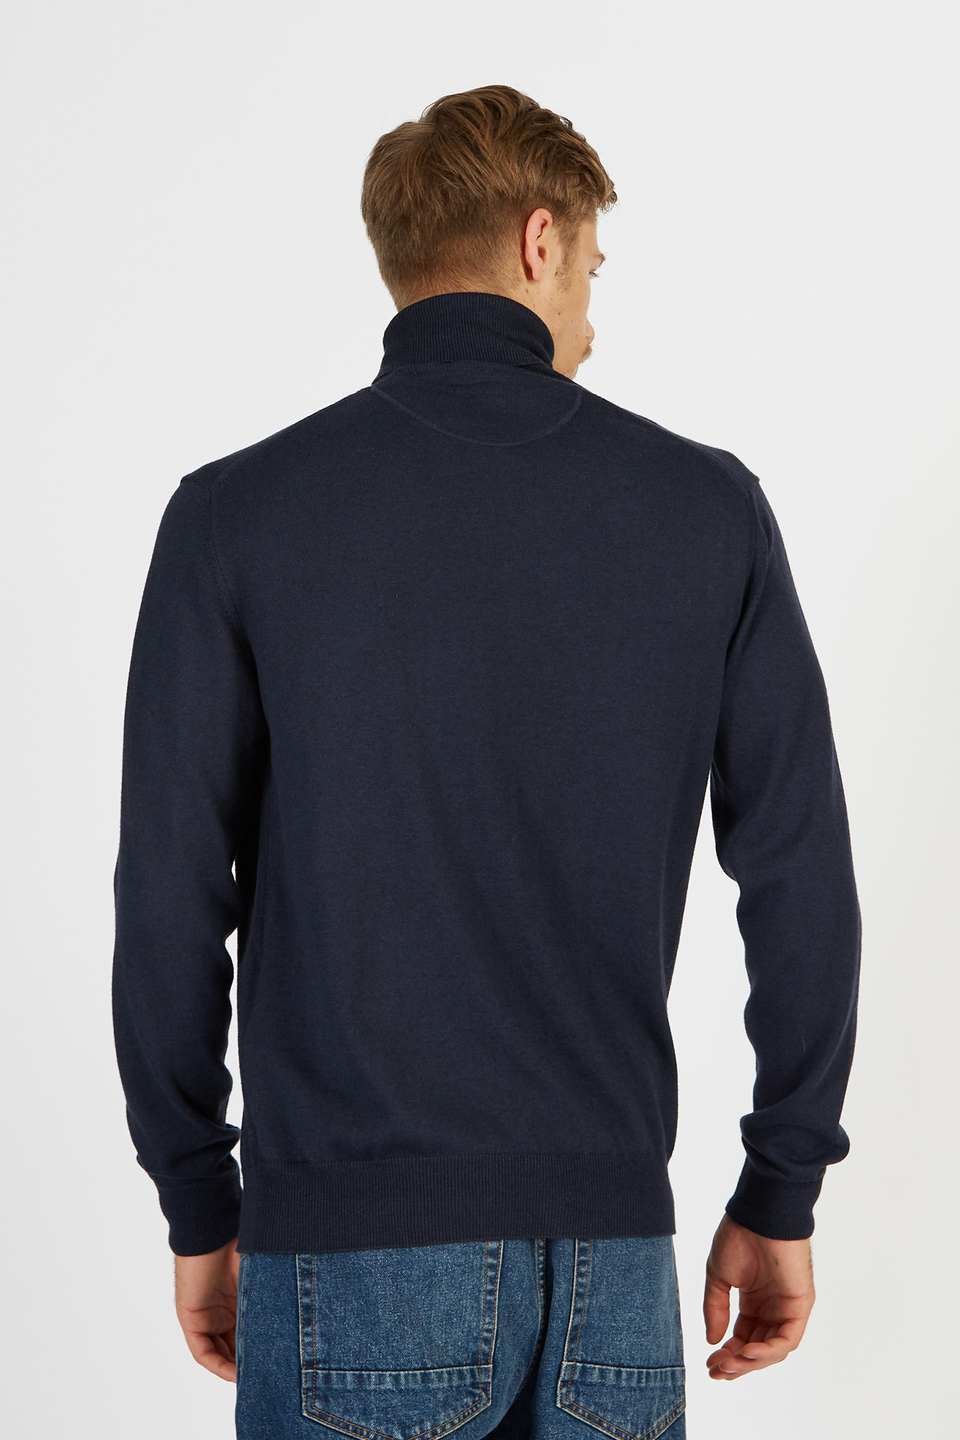 Maglia da uomo a maniche lunghe collo alto in misto cotone e lana regular fit | La Martina - Official Online Shop